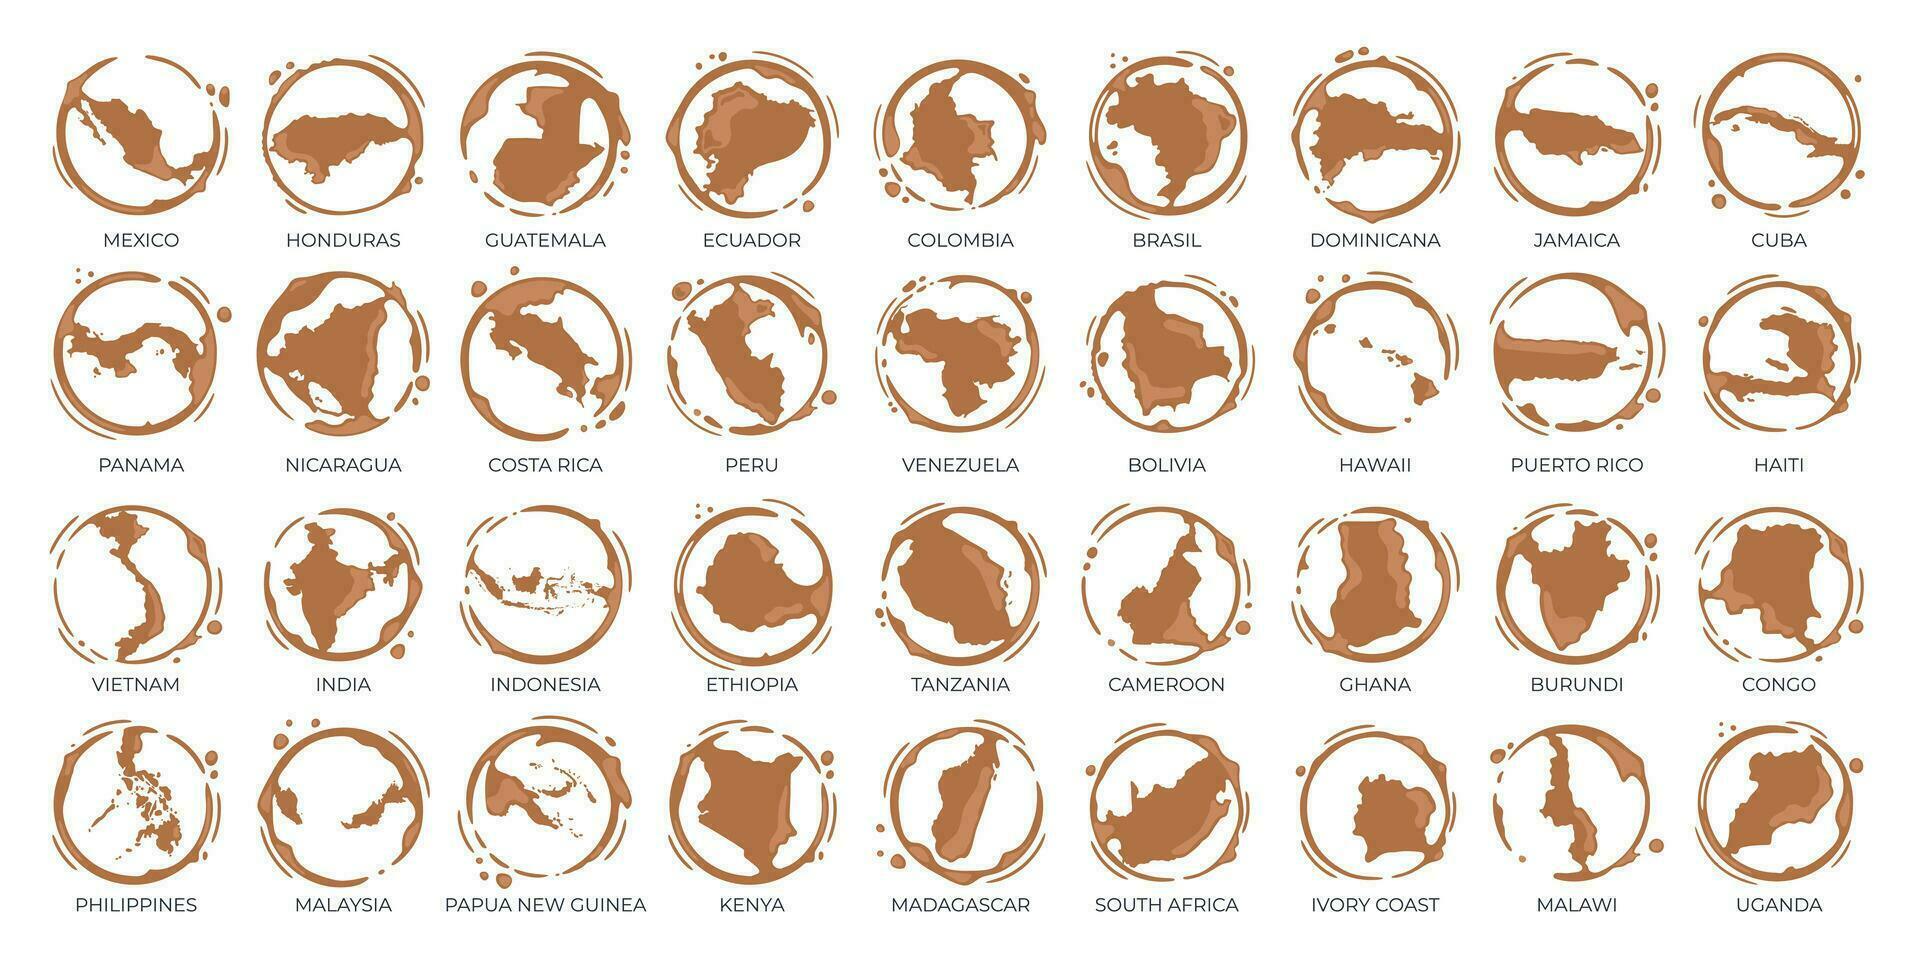 samling av kaffe kopp runda fläckar formad tycka om en kaffe ursprung länder, producenter och exportörer. vektor